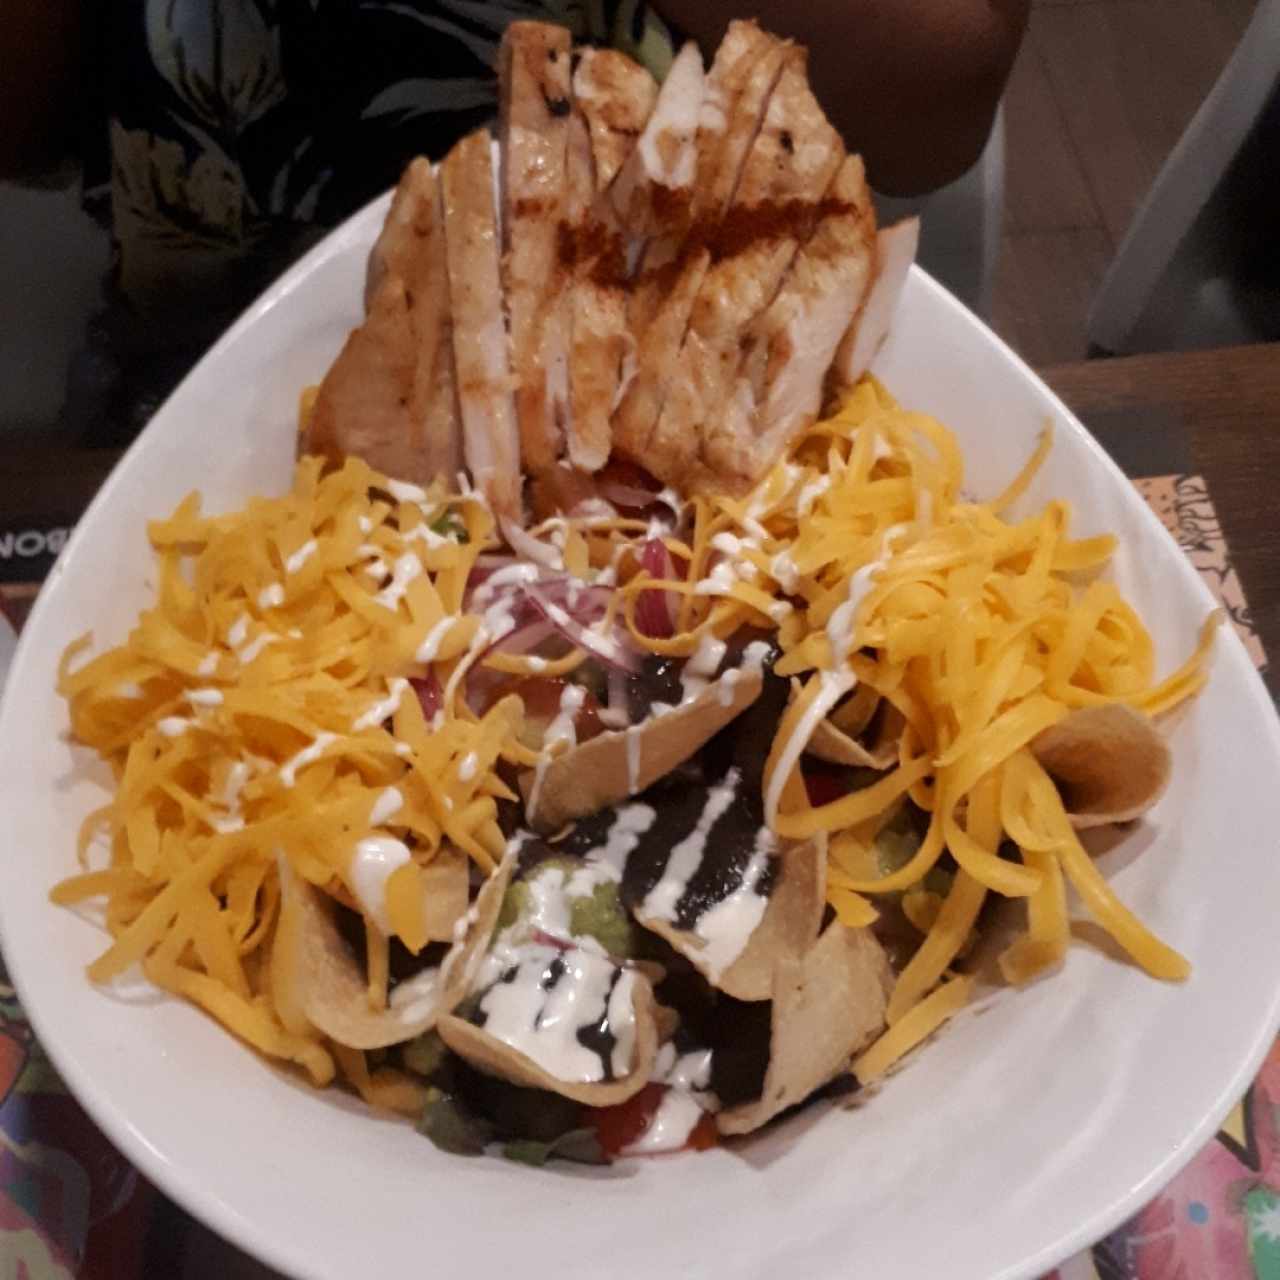 Mexican Taco Salad